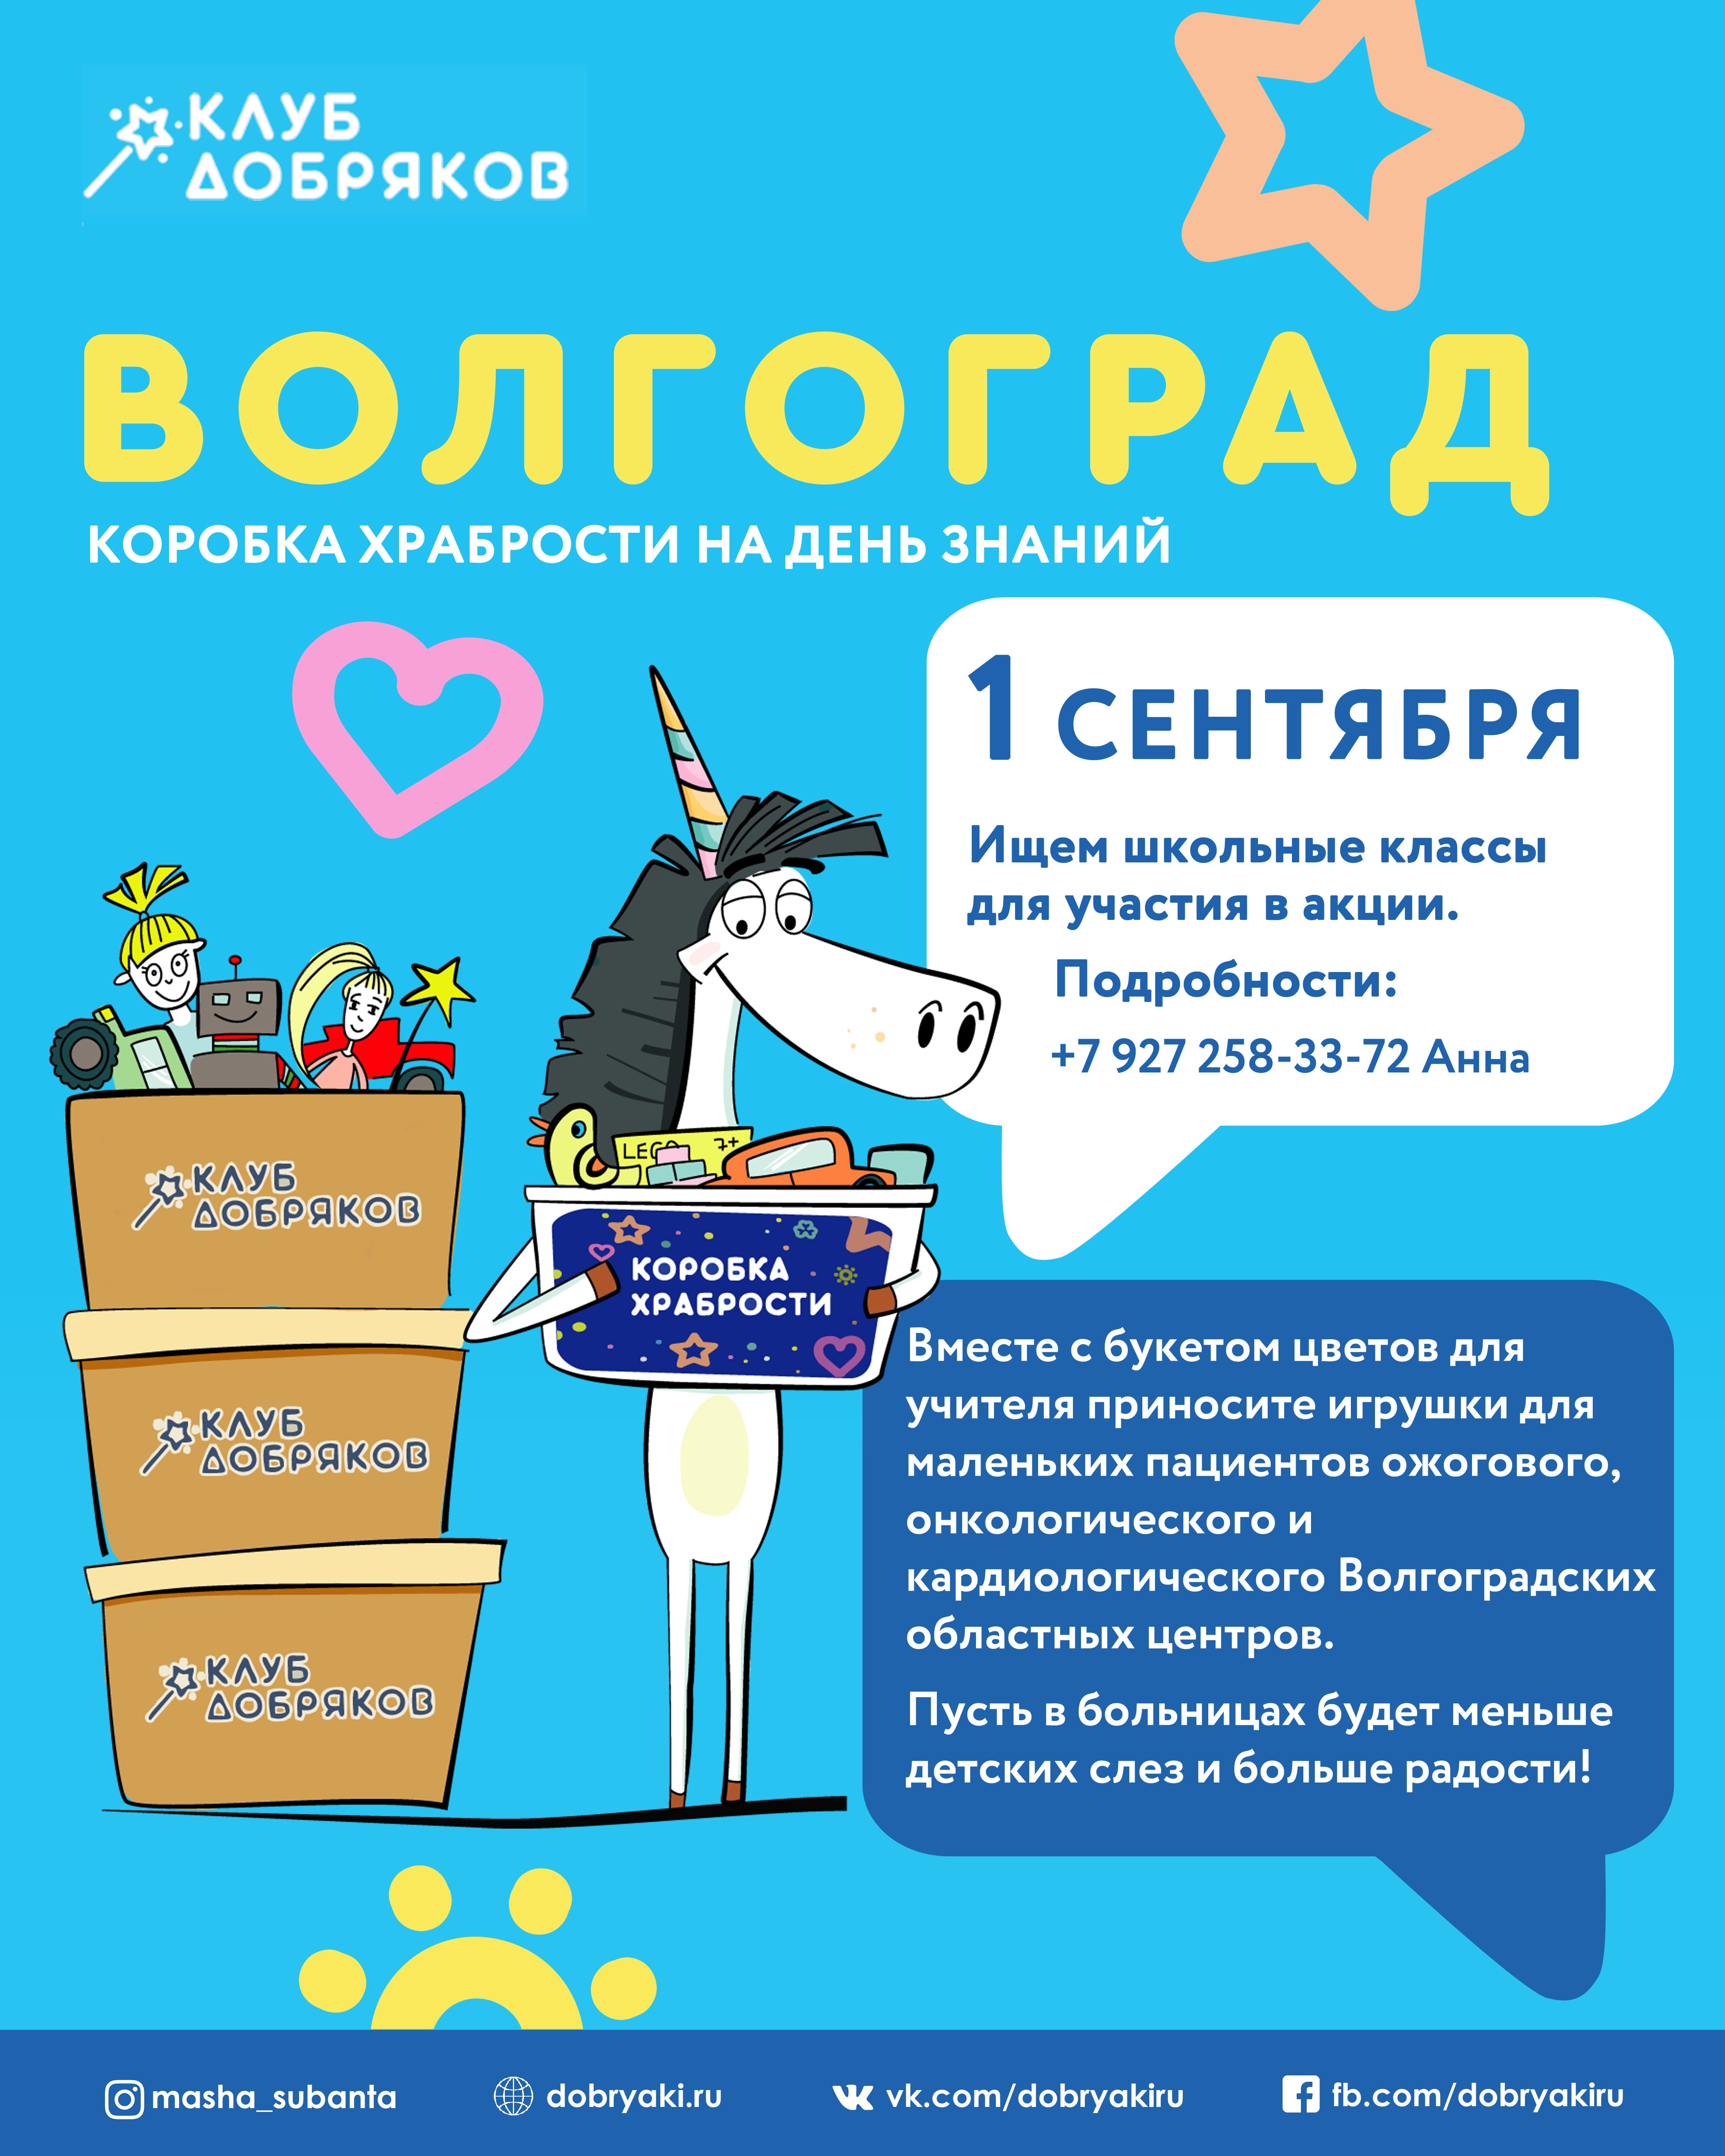 В Волгограде пройдет акция «Коробка храбрости на День знаний»